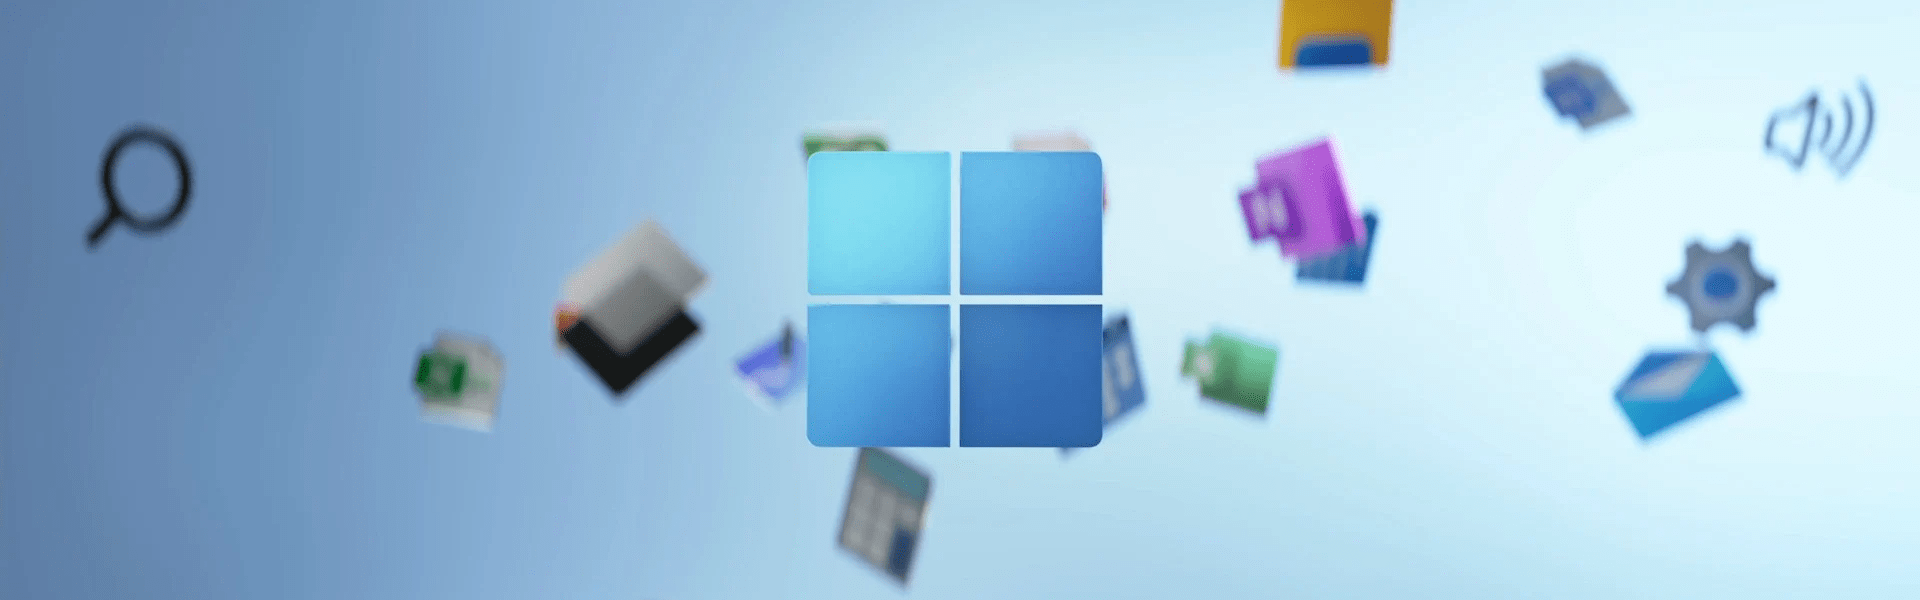 Problemy z Windows 12: typowe problemy i ich rozwiązania